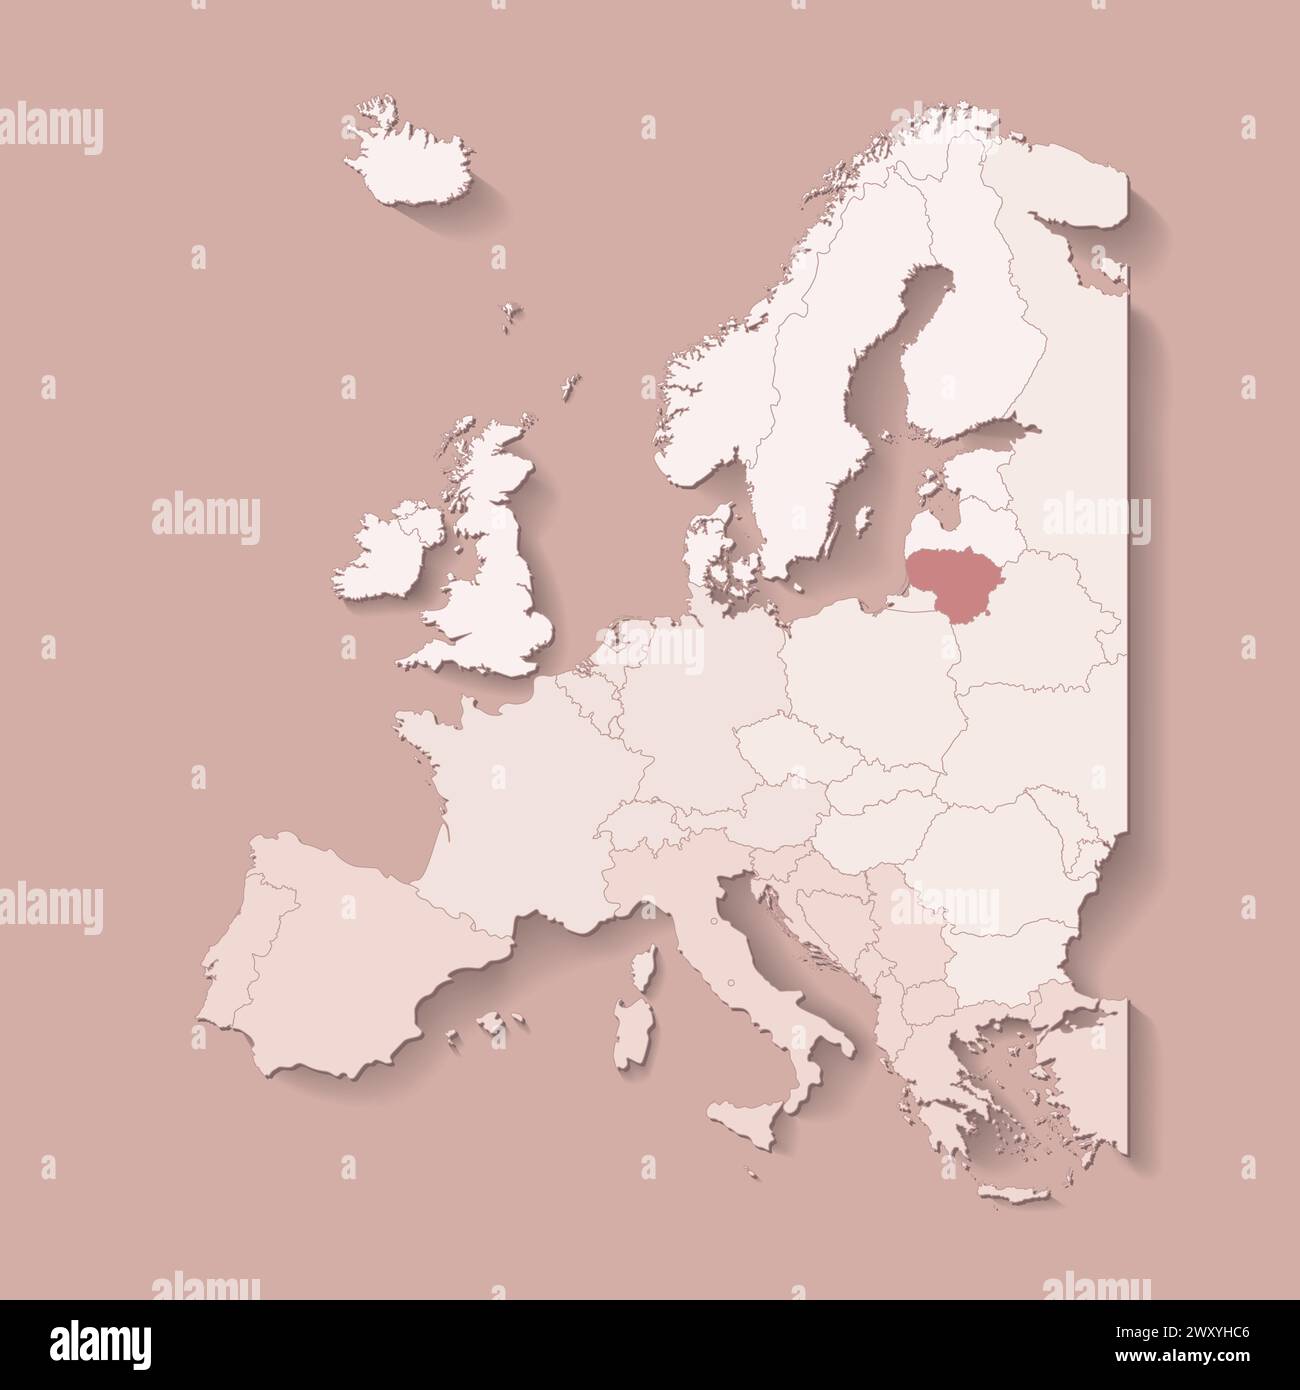 Vektor-Illustration mit europäischem Land mit Grenzen von staaten und markiertem Land Litauen. Politische Karte in braunen Farben mit West, Süd und etc Stock Vektor